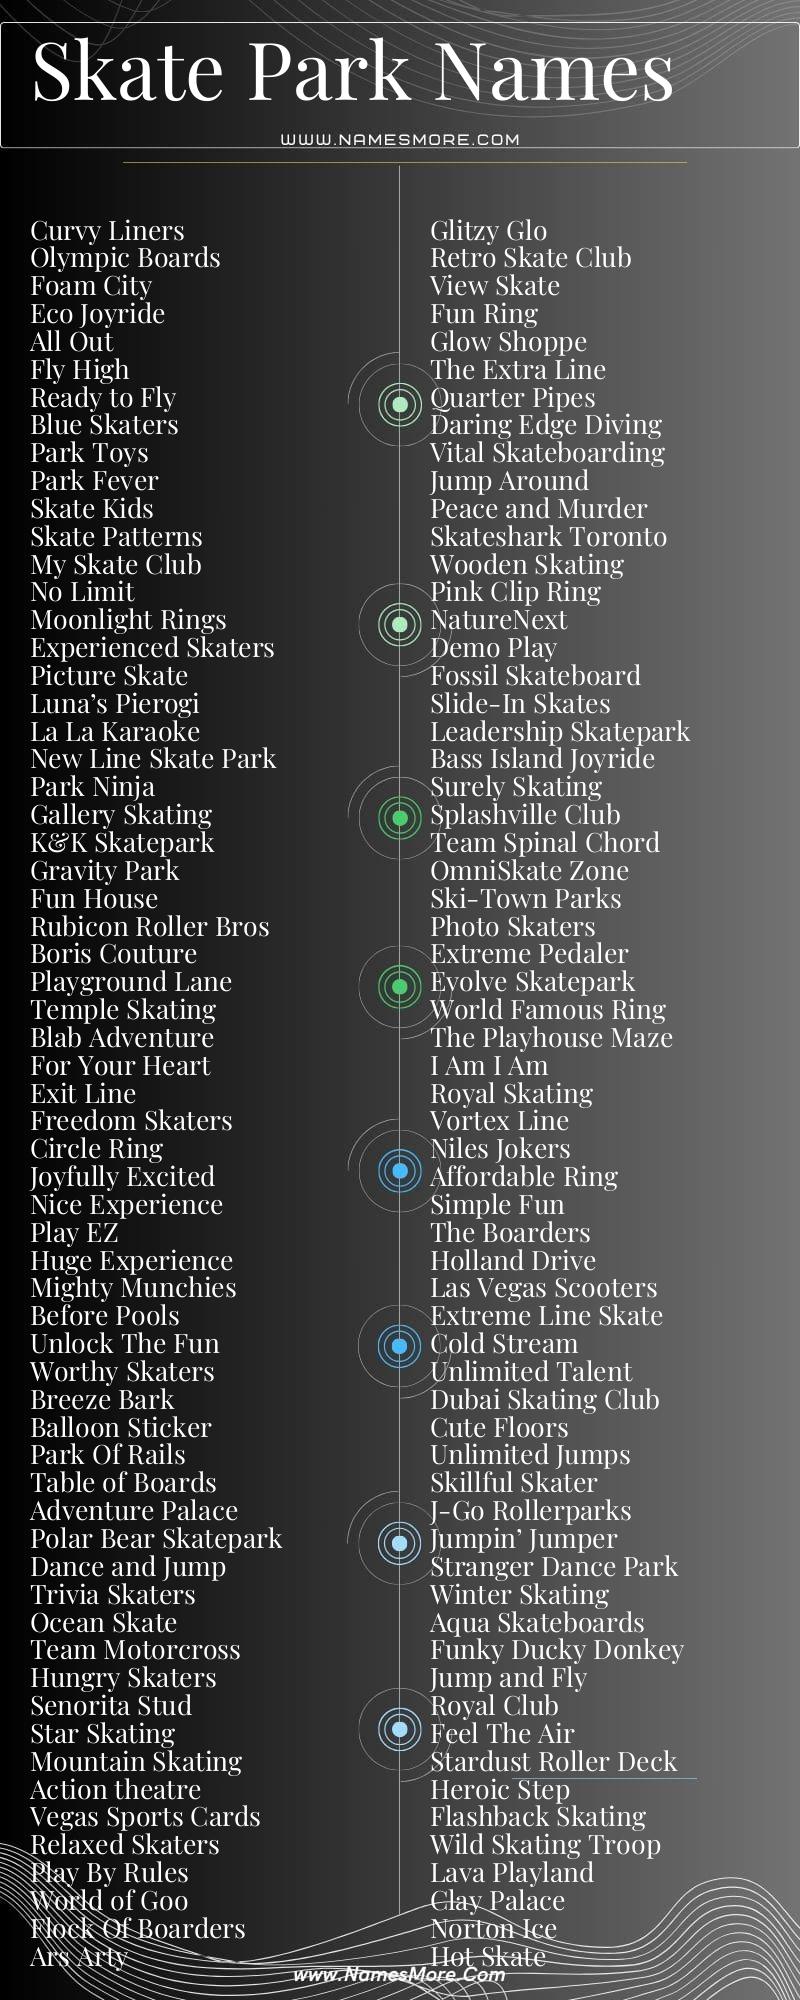 Skate Park Names List Infographic